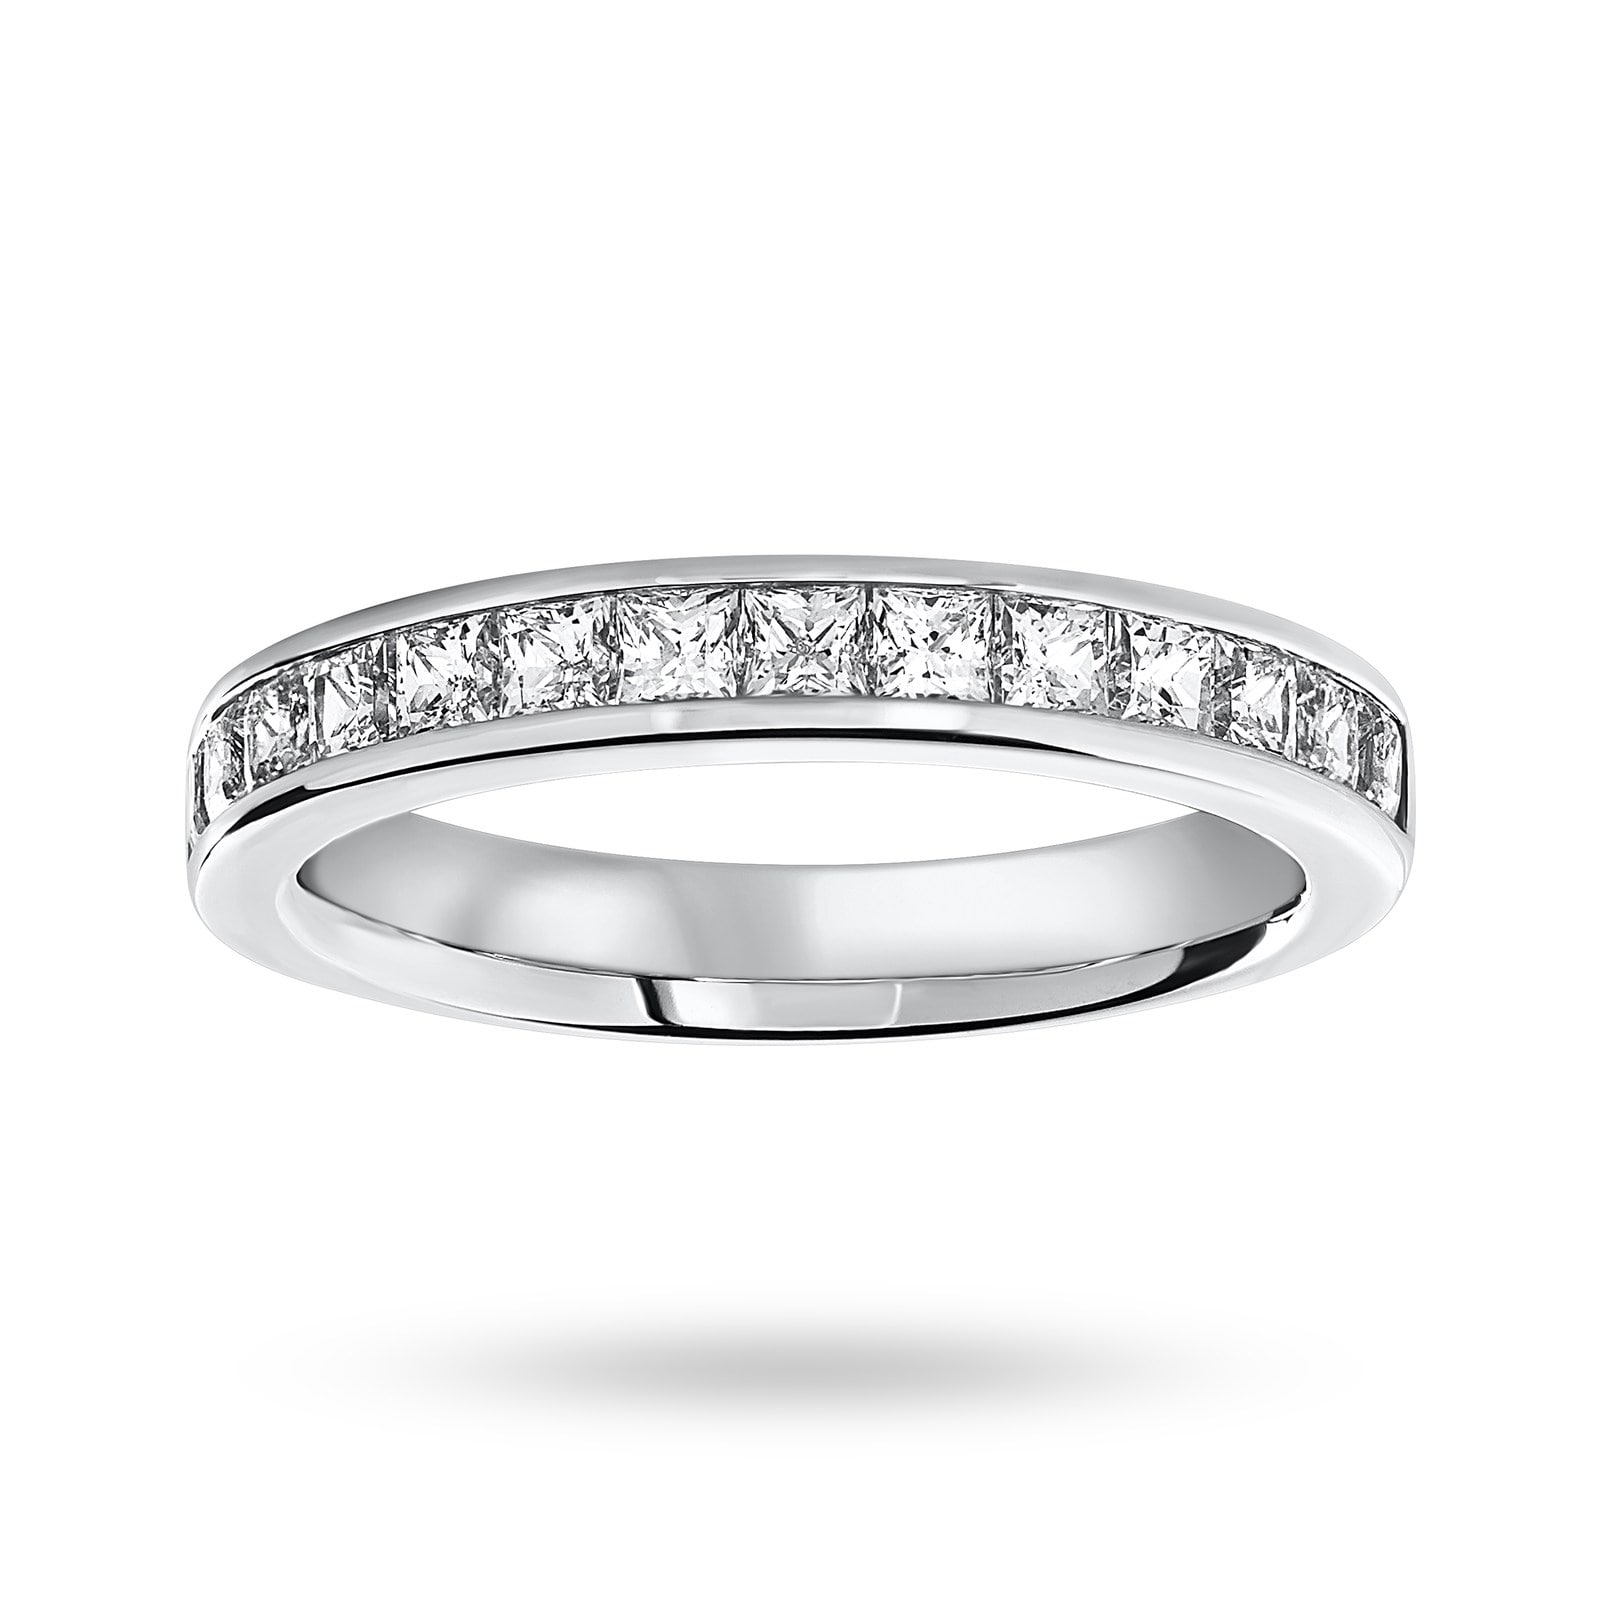 18 Carat White Gold 1.00 Carat Princess Cut Half Eternity Ring - Ring Size J